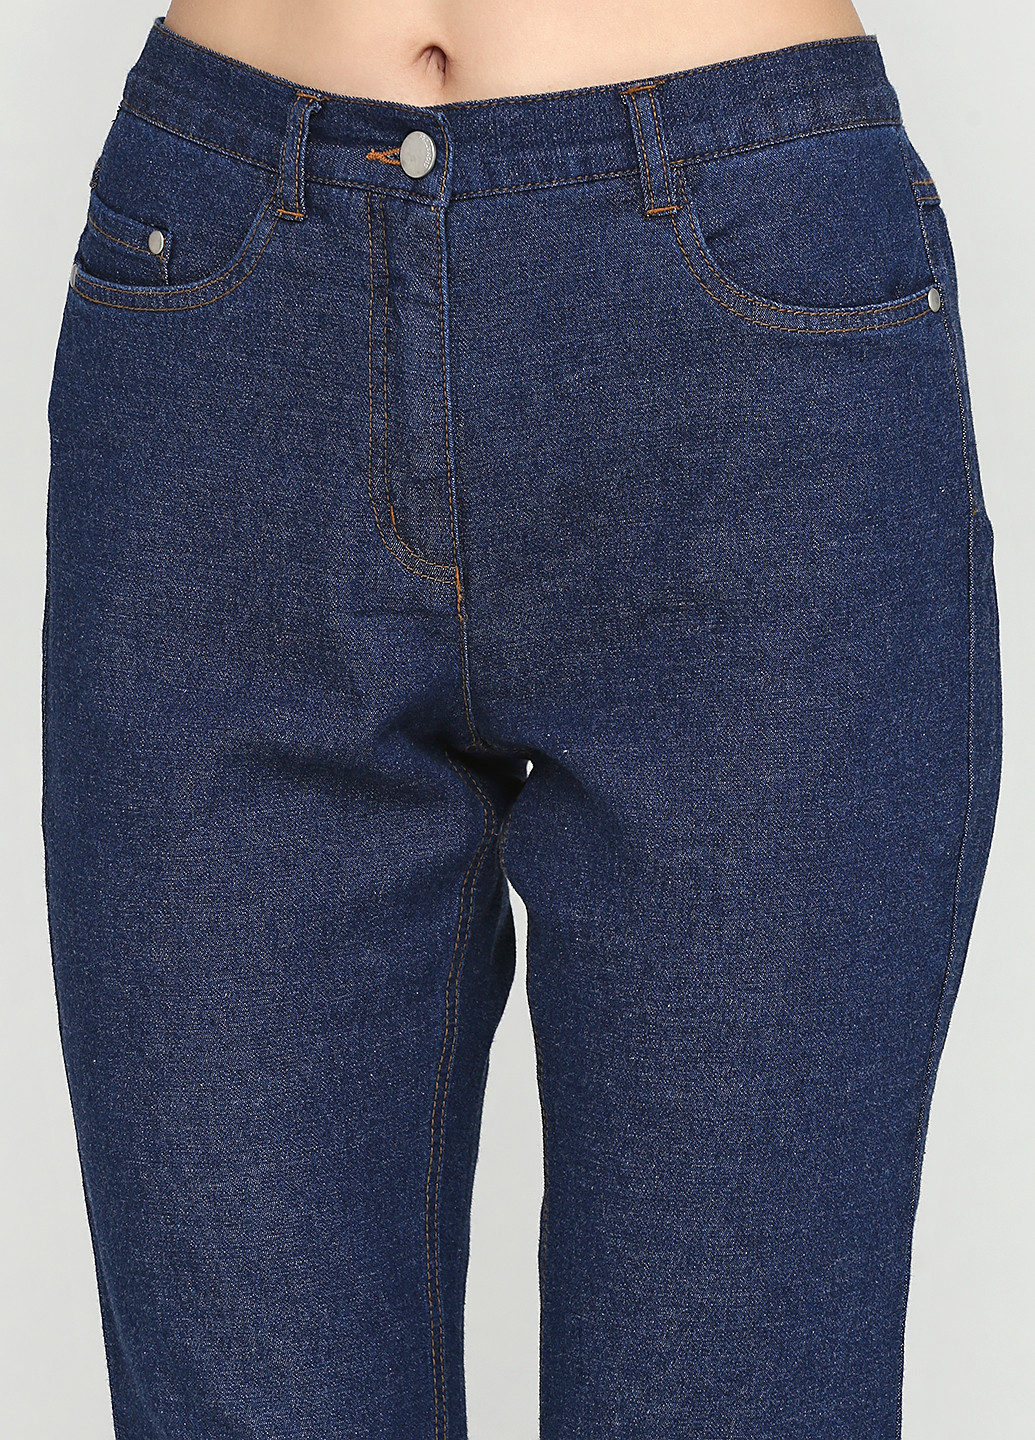 Бриджи Signature однотонные тёмно-синие джинсовые